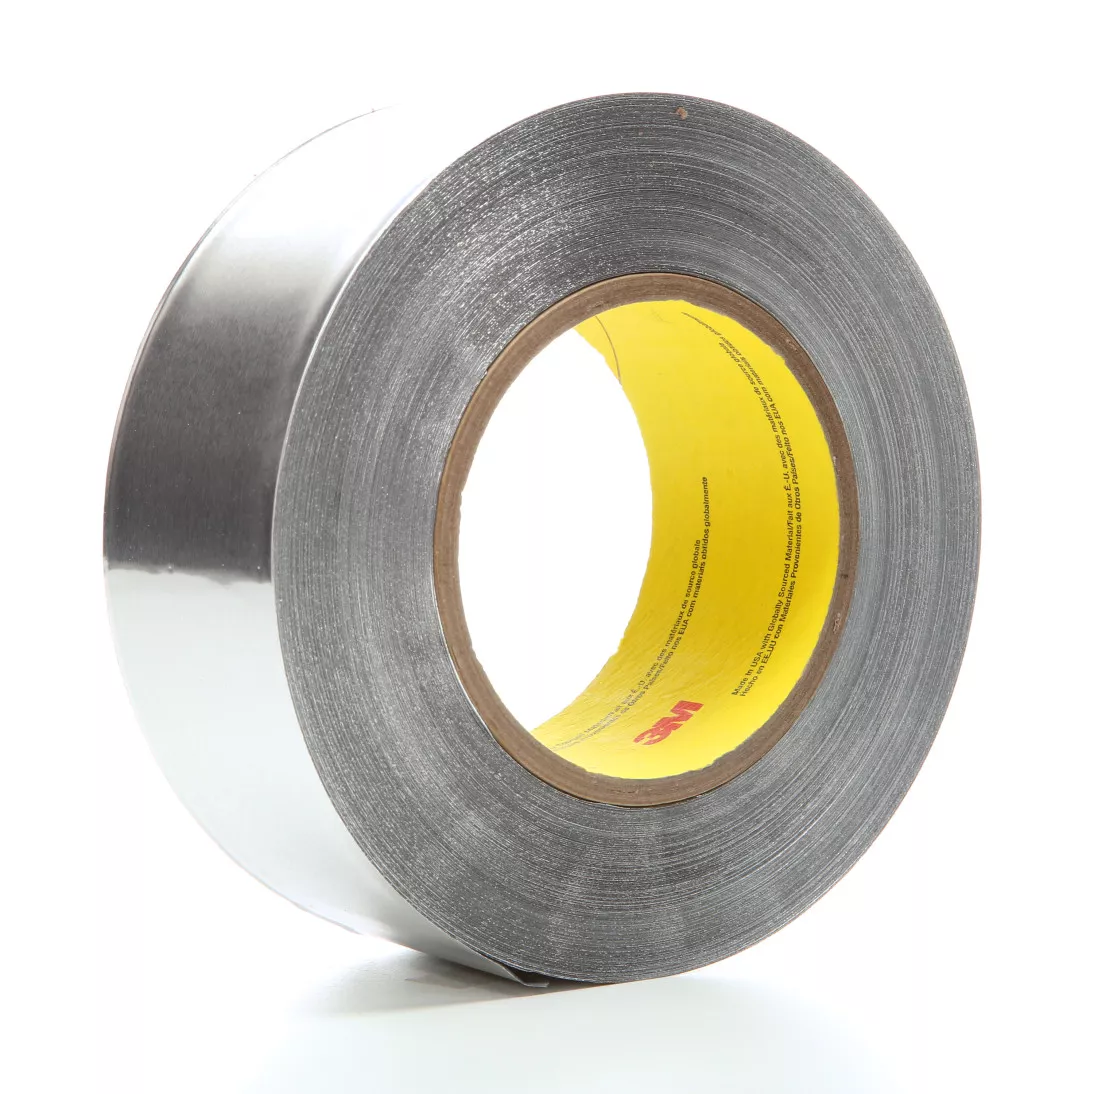 3M™ Heavy Duty Aluminum Foil Tape 438, Silver, 2-1/2 in x 60 yd, 7.2
mil, 16 rolls per case